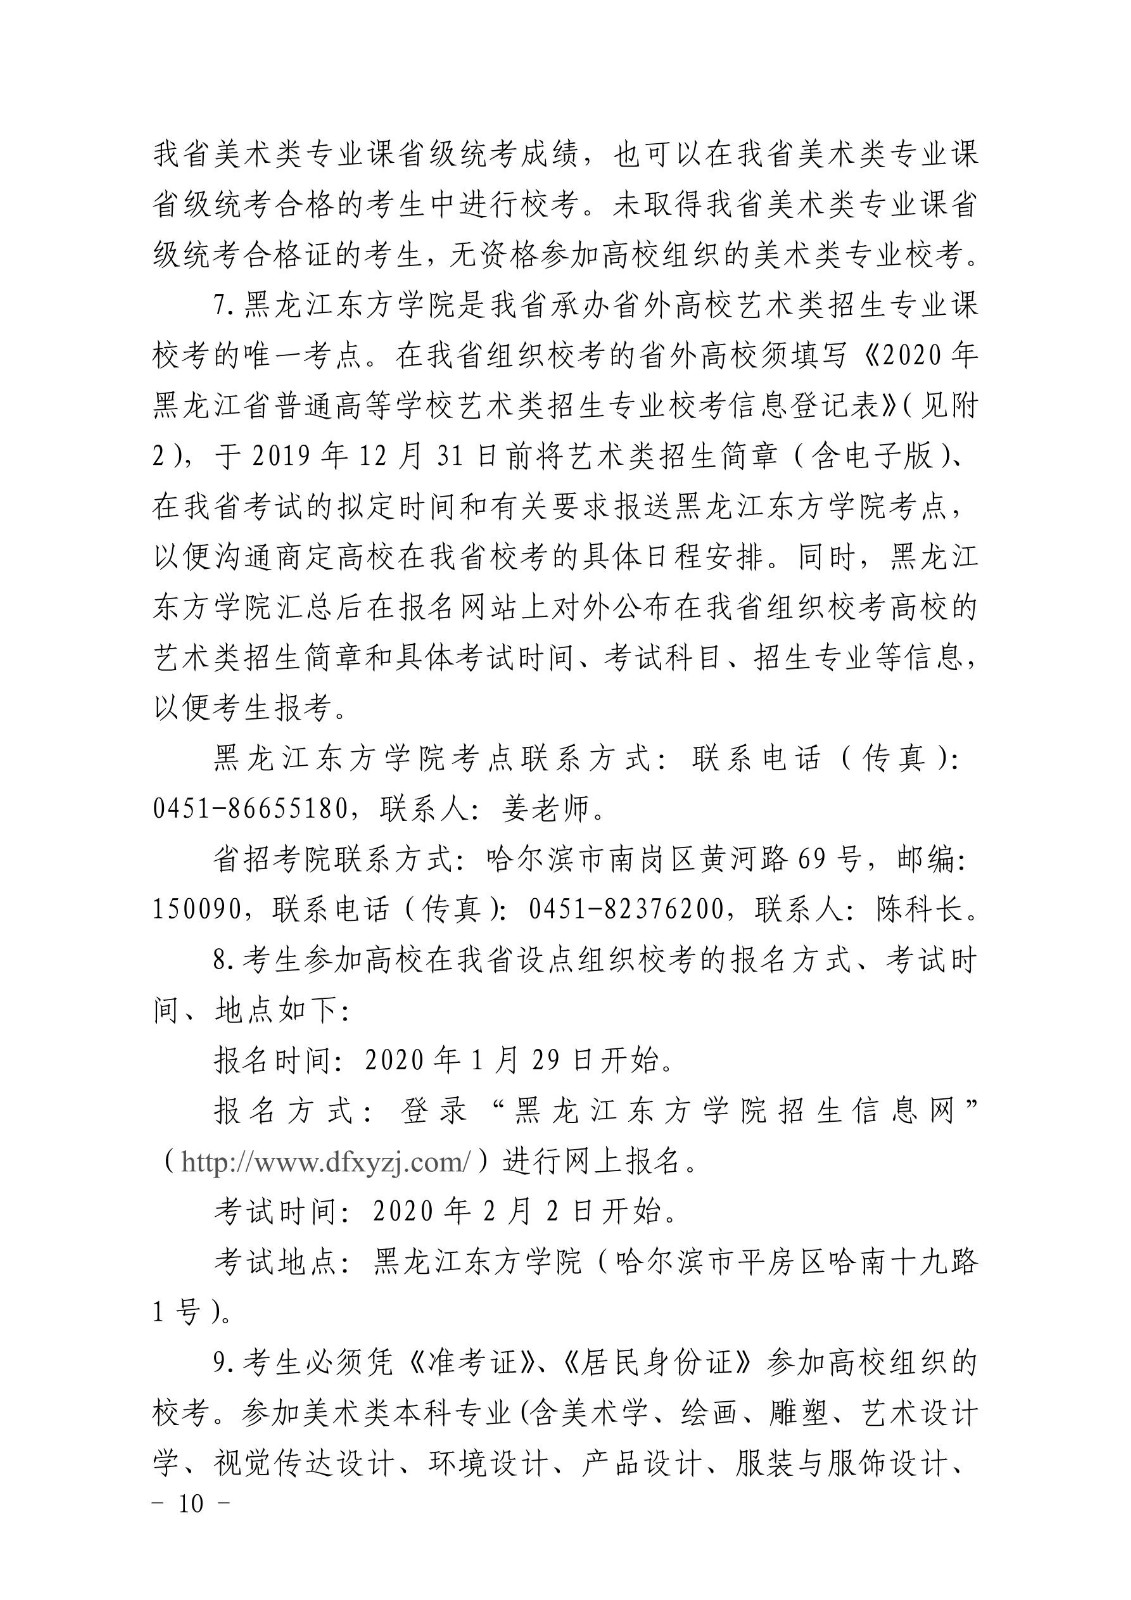 《黑龙江省2020年普通高等学校艺术类招生实施办法》公布